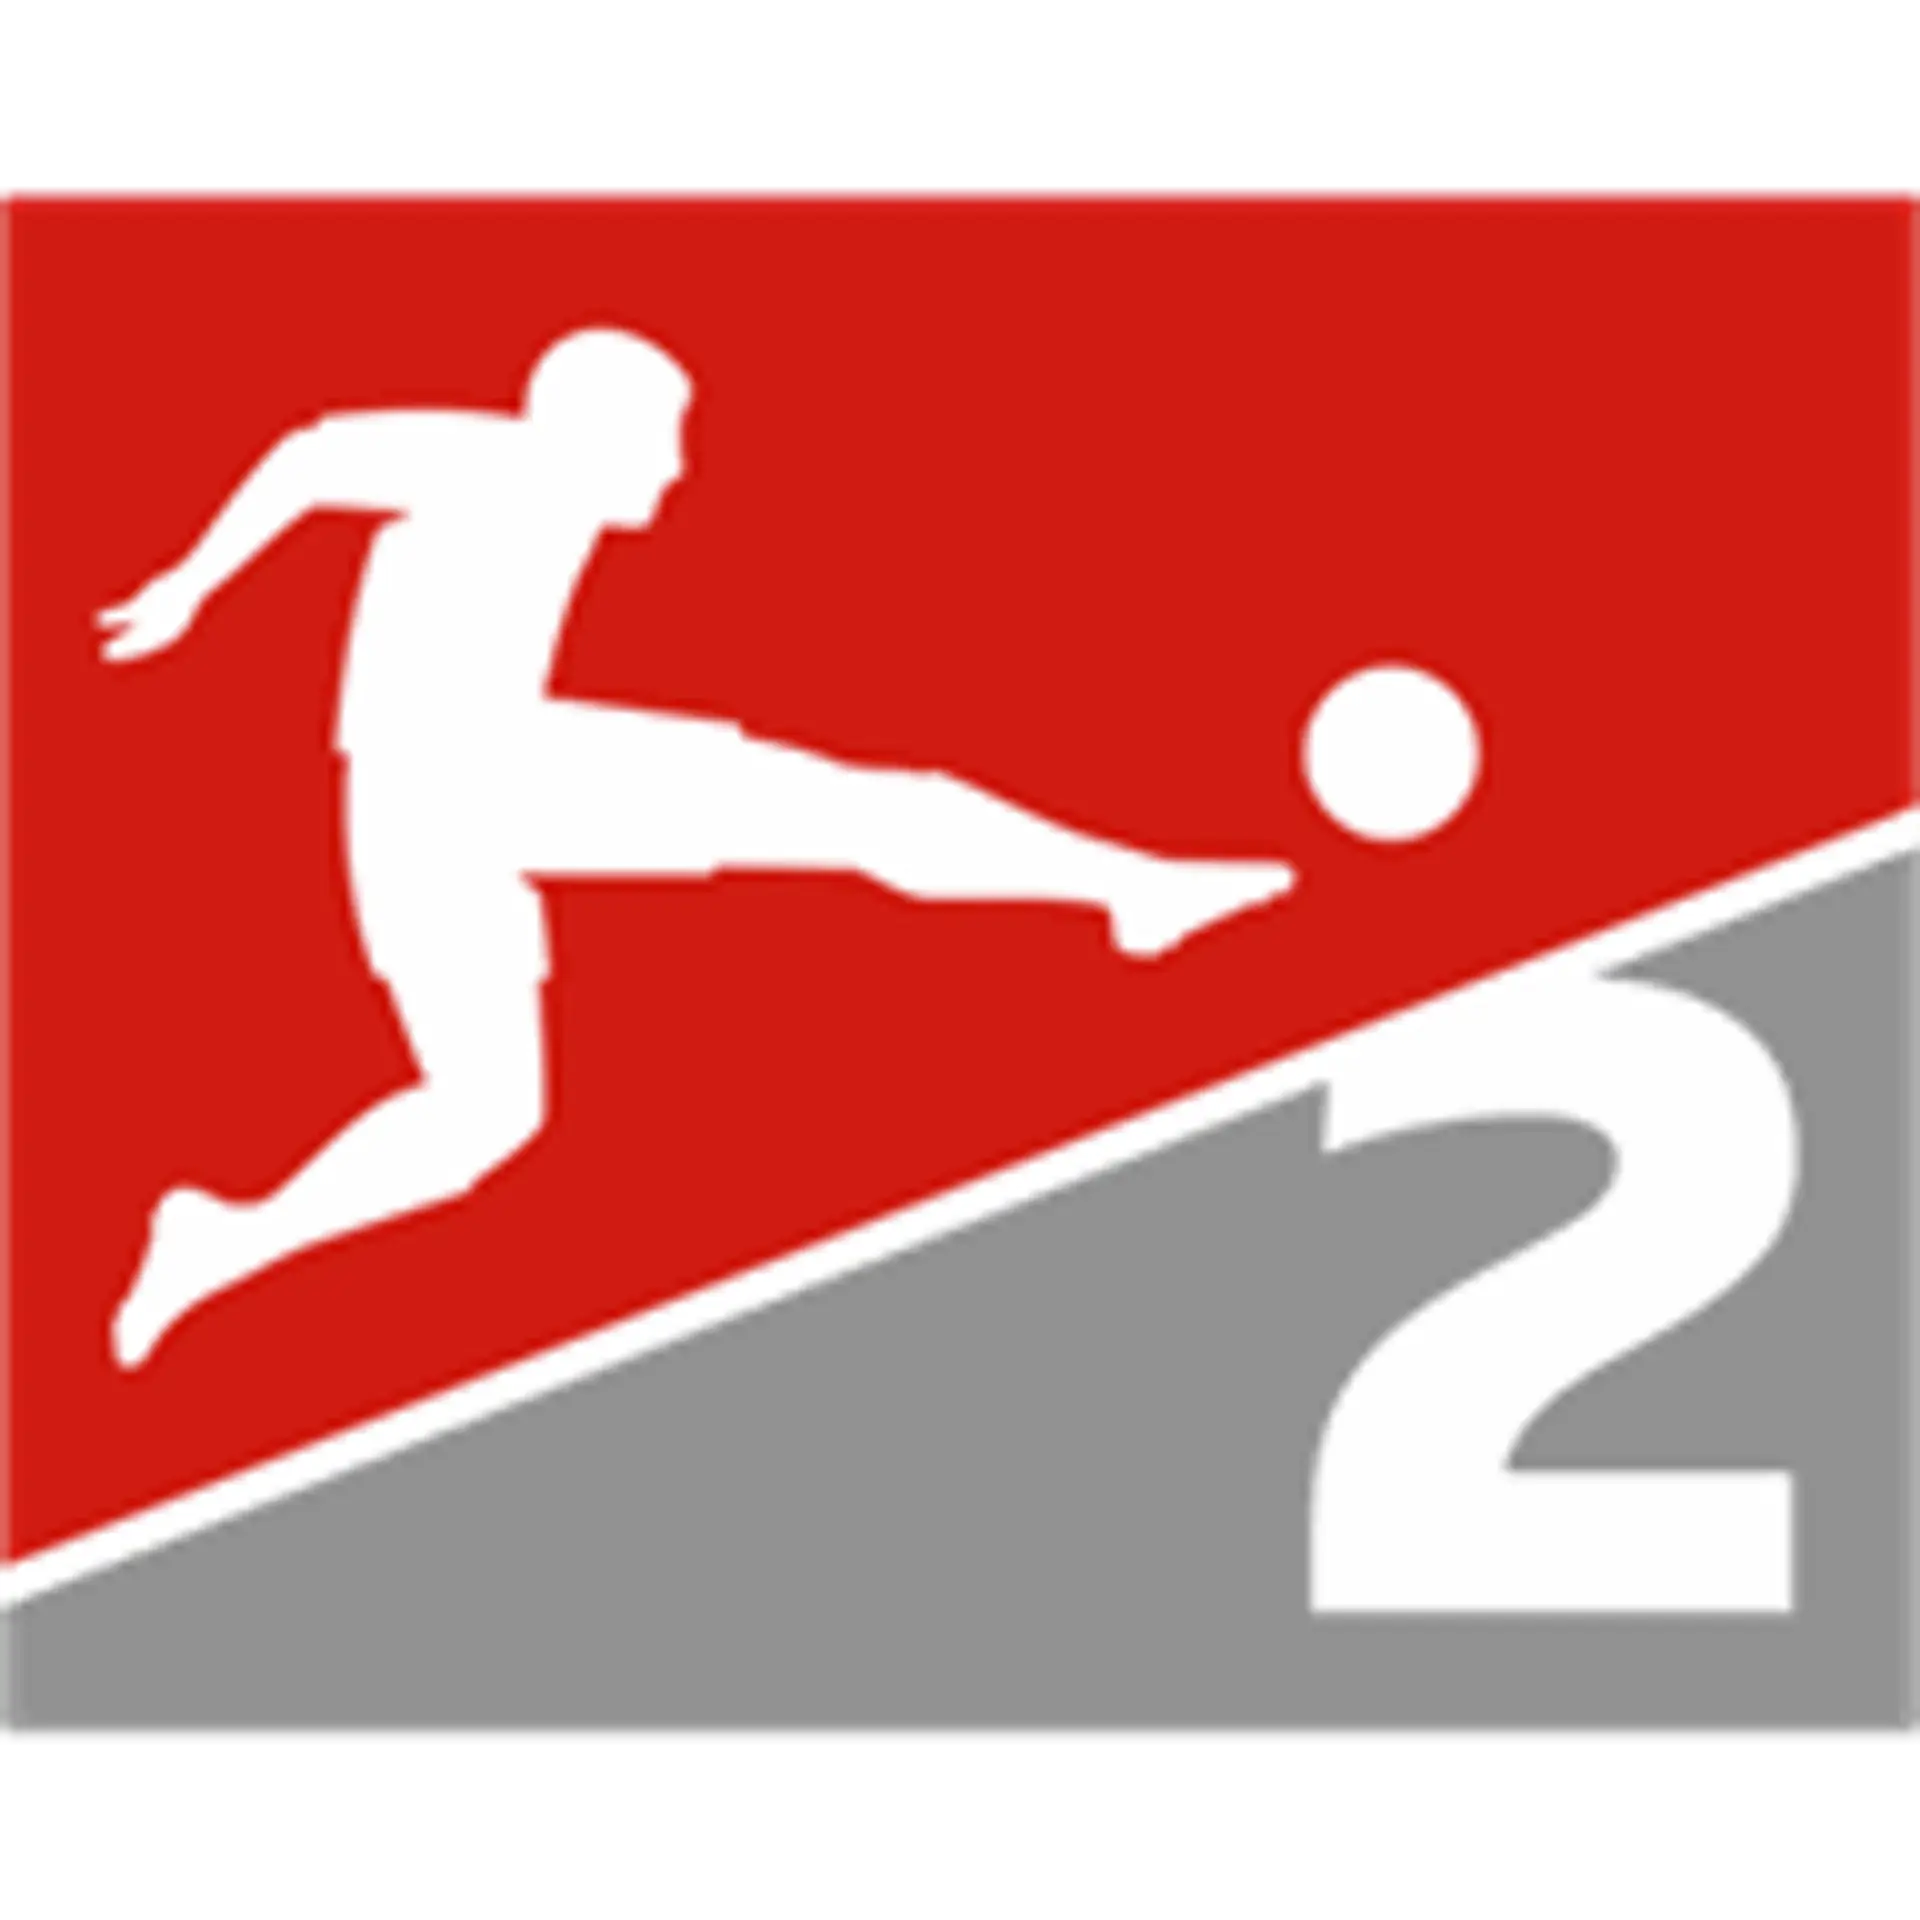 2. Bundesliga